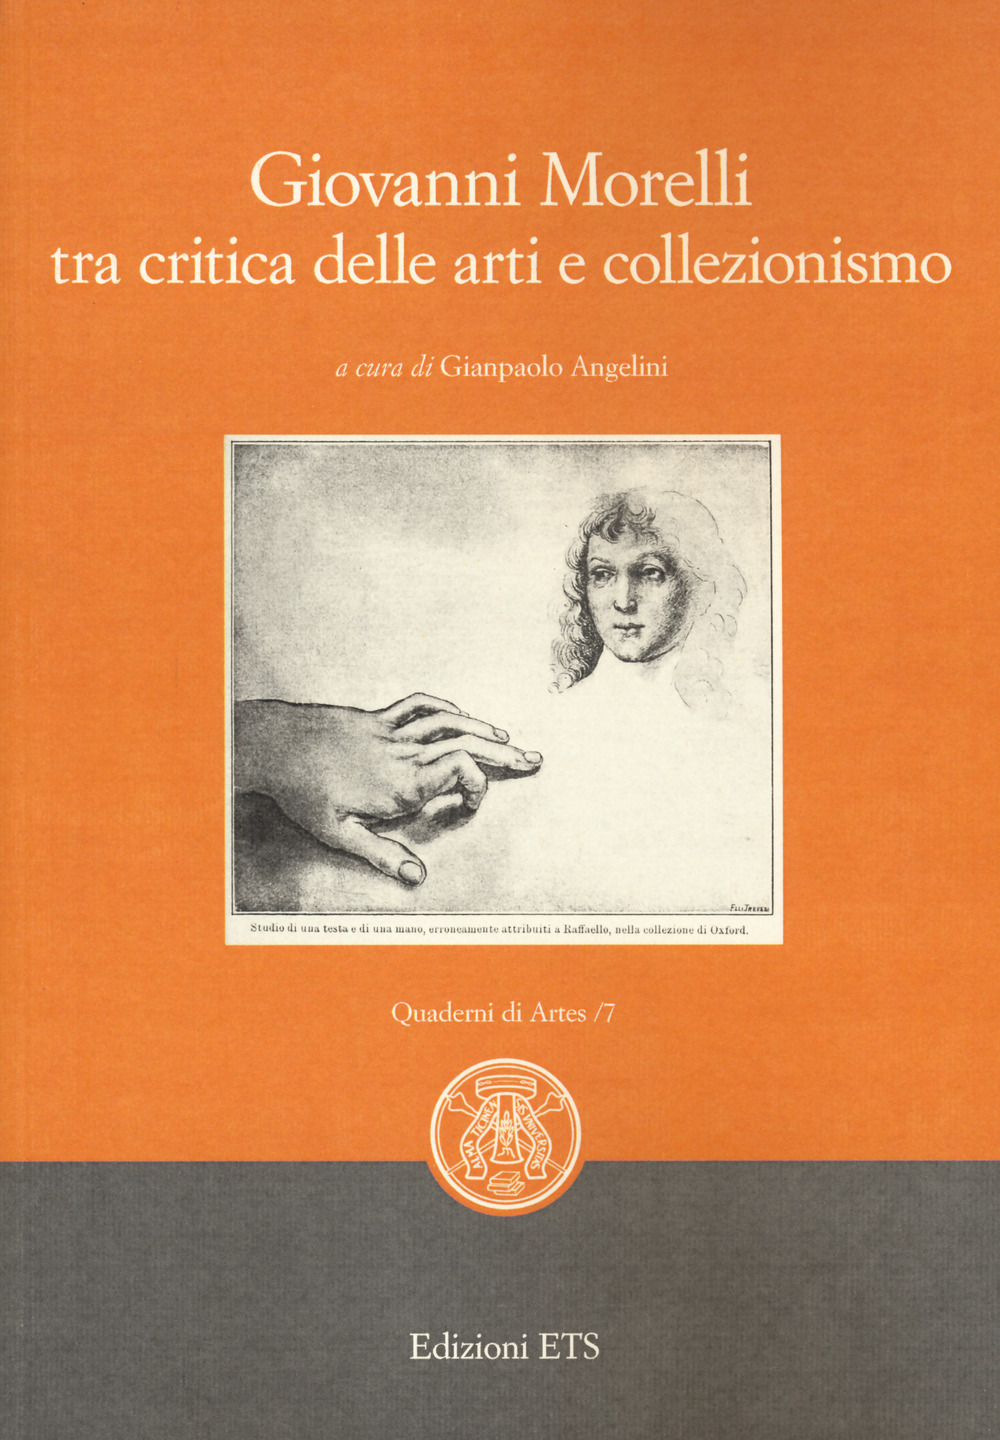 Giovanni Morelli tra critica delle arti e collezionismo